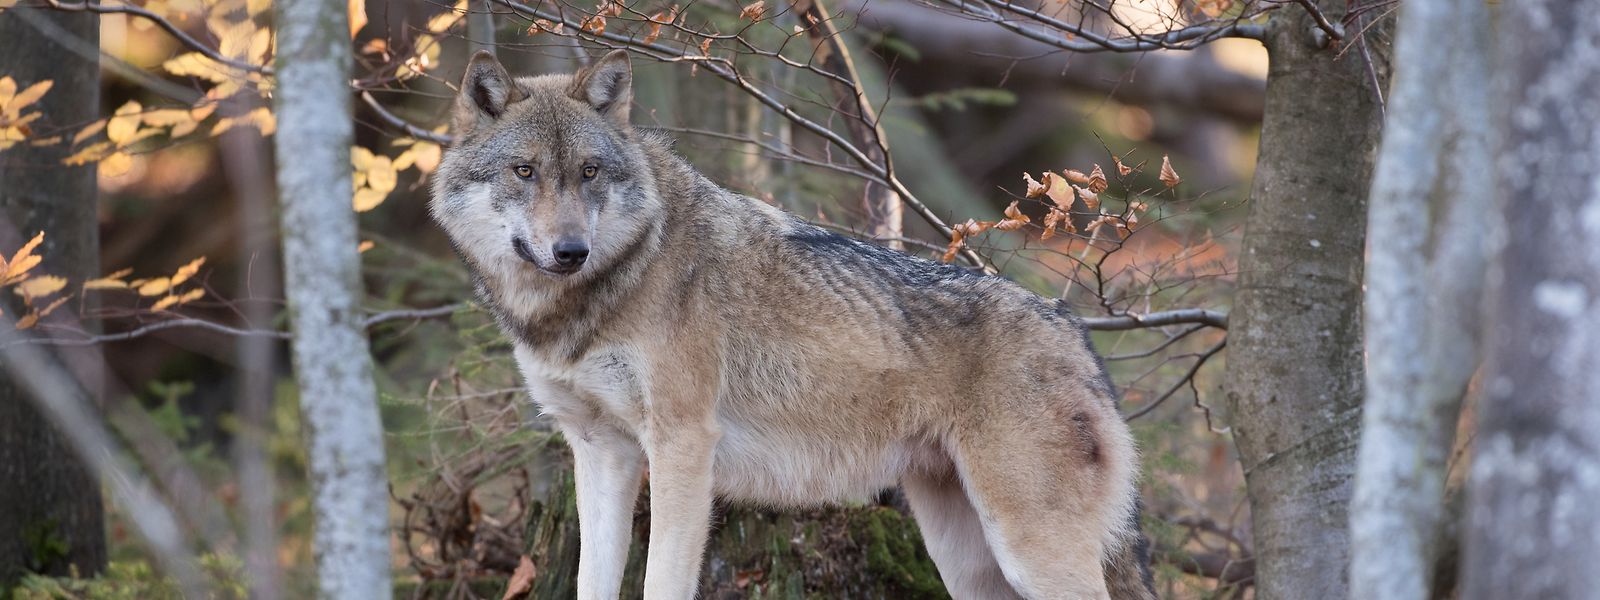 Le loup s'est installé dans les régions frontalières au Luxembourg depuis quelques années.